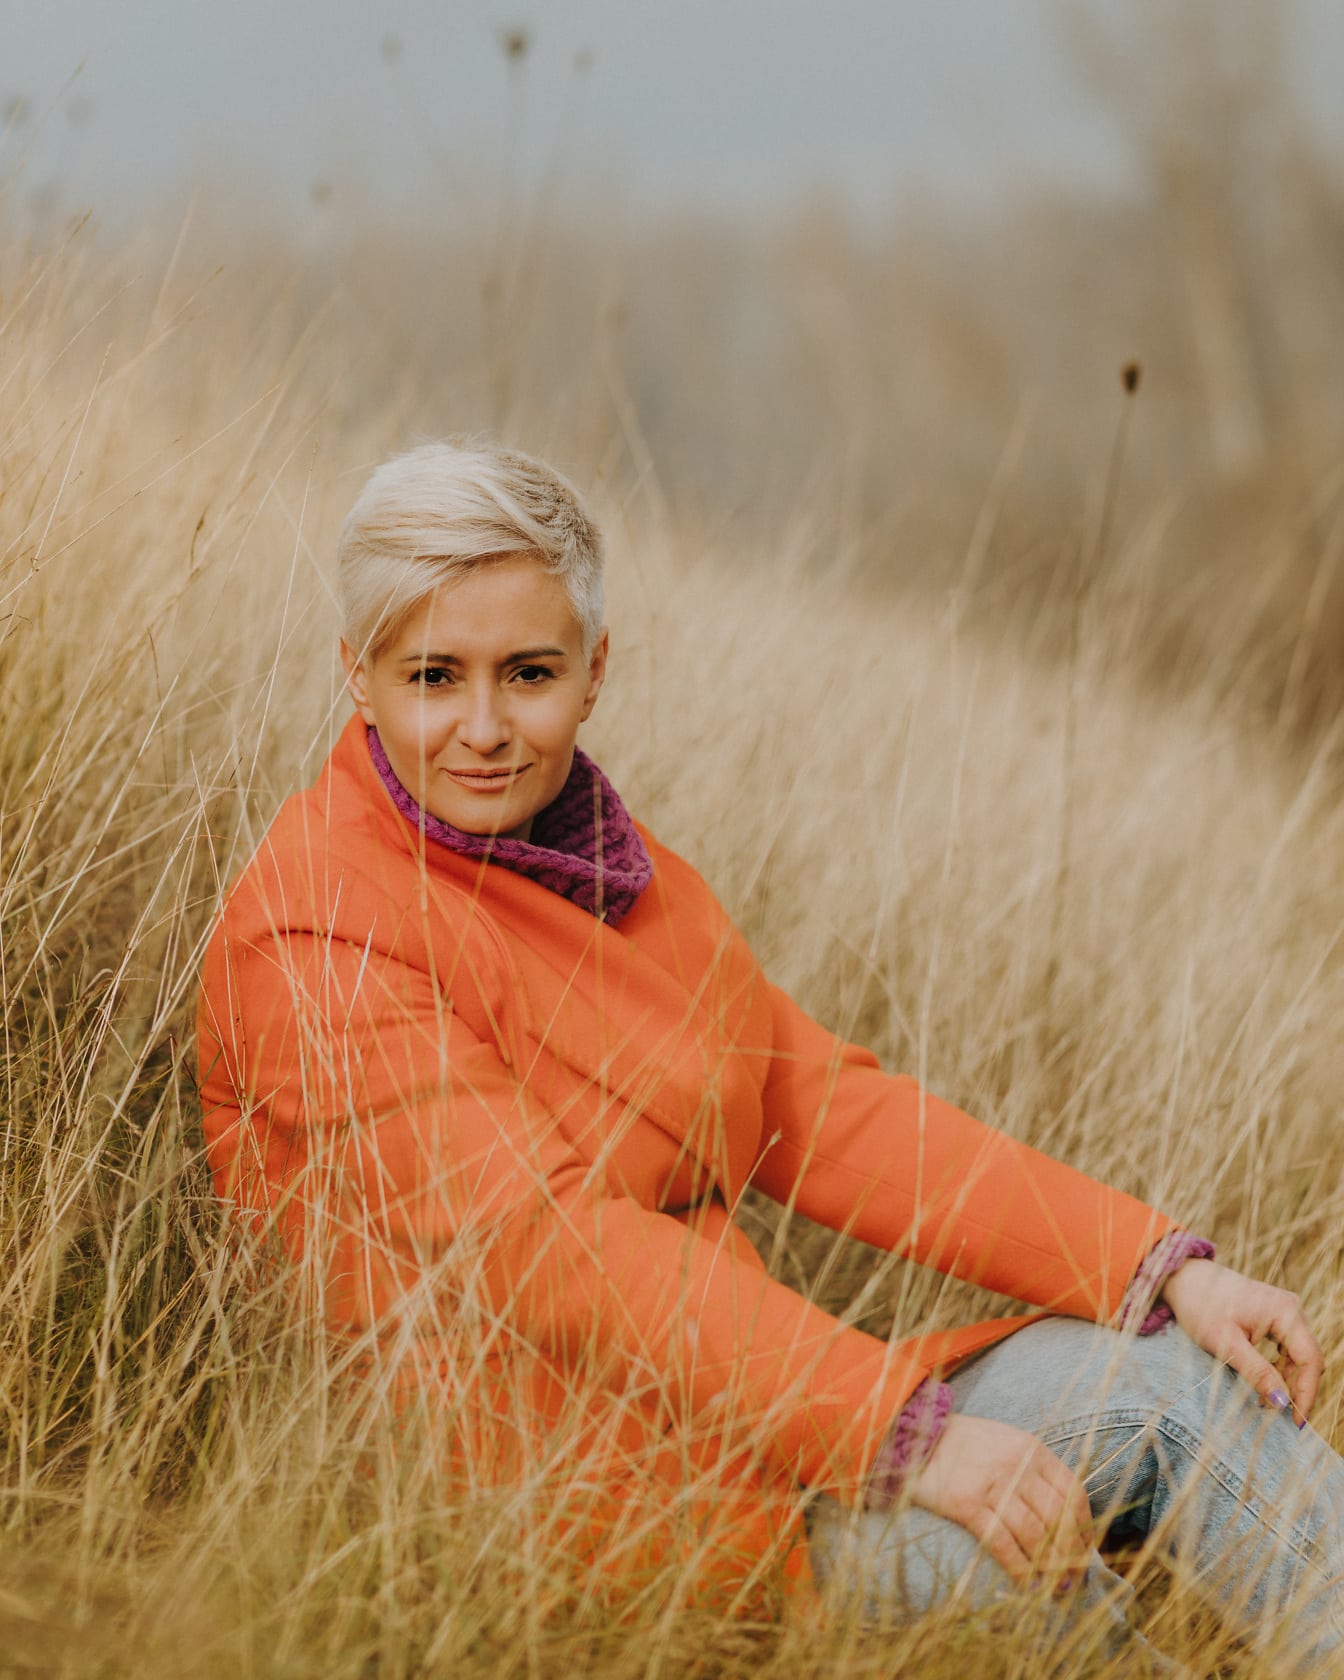 Krásné krátké vlasy blond foto model sedí v suché trávě